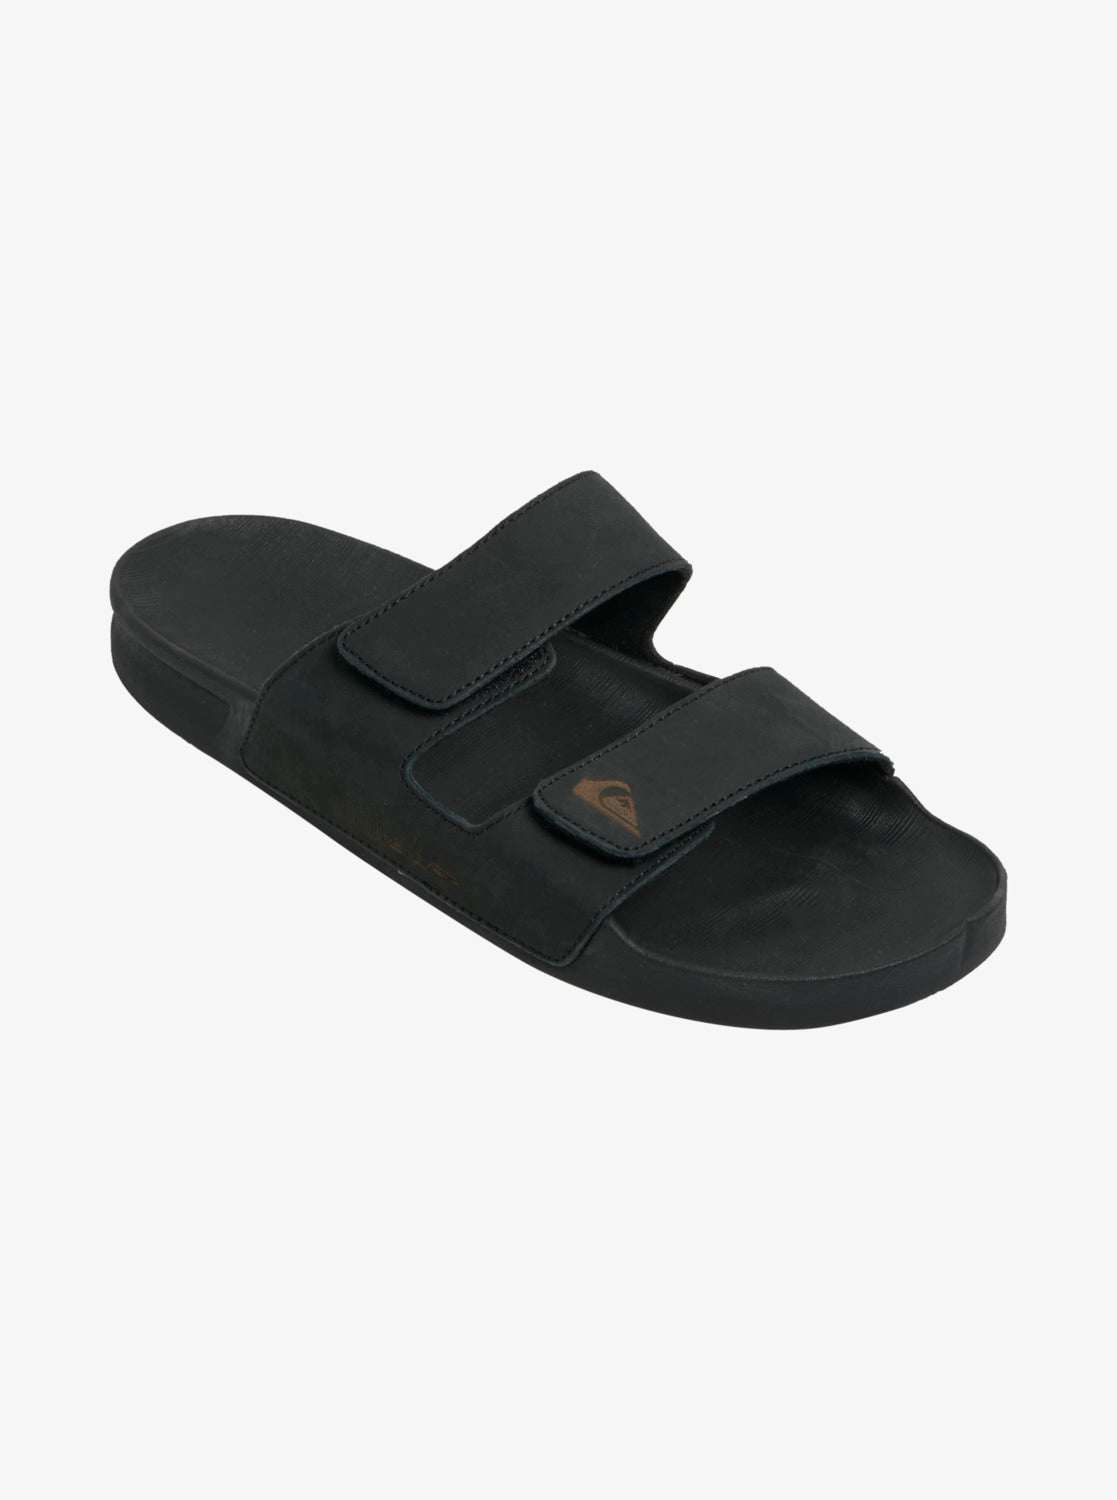 Rivi Leather Double Adjust Sandals - Tan 1 – Quiksilver.com